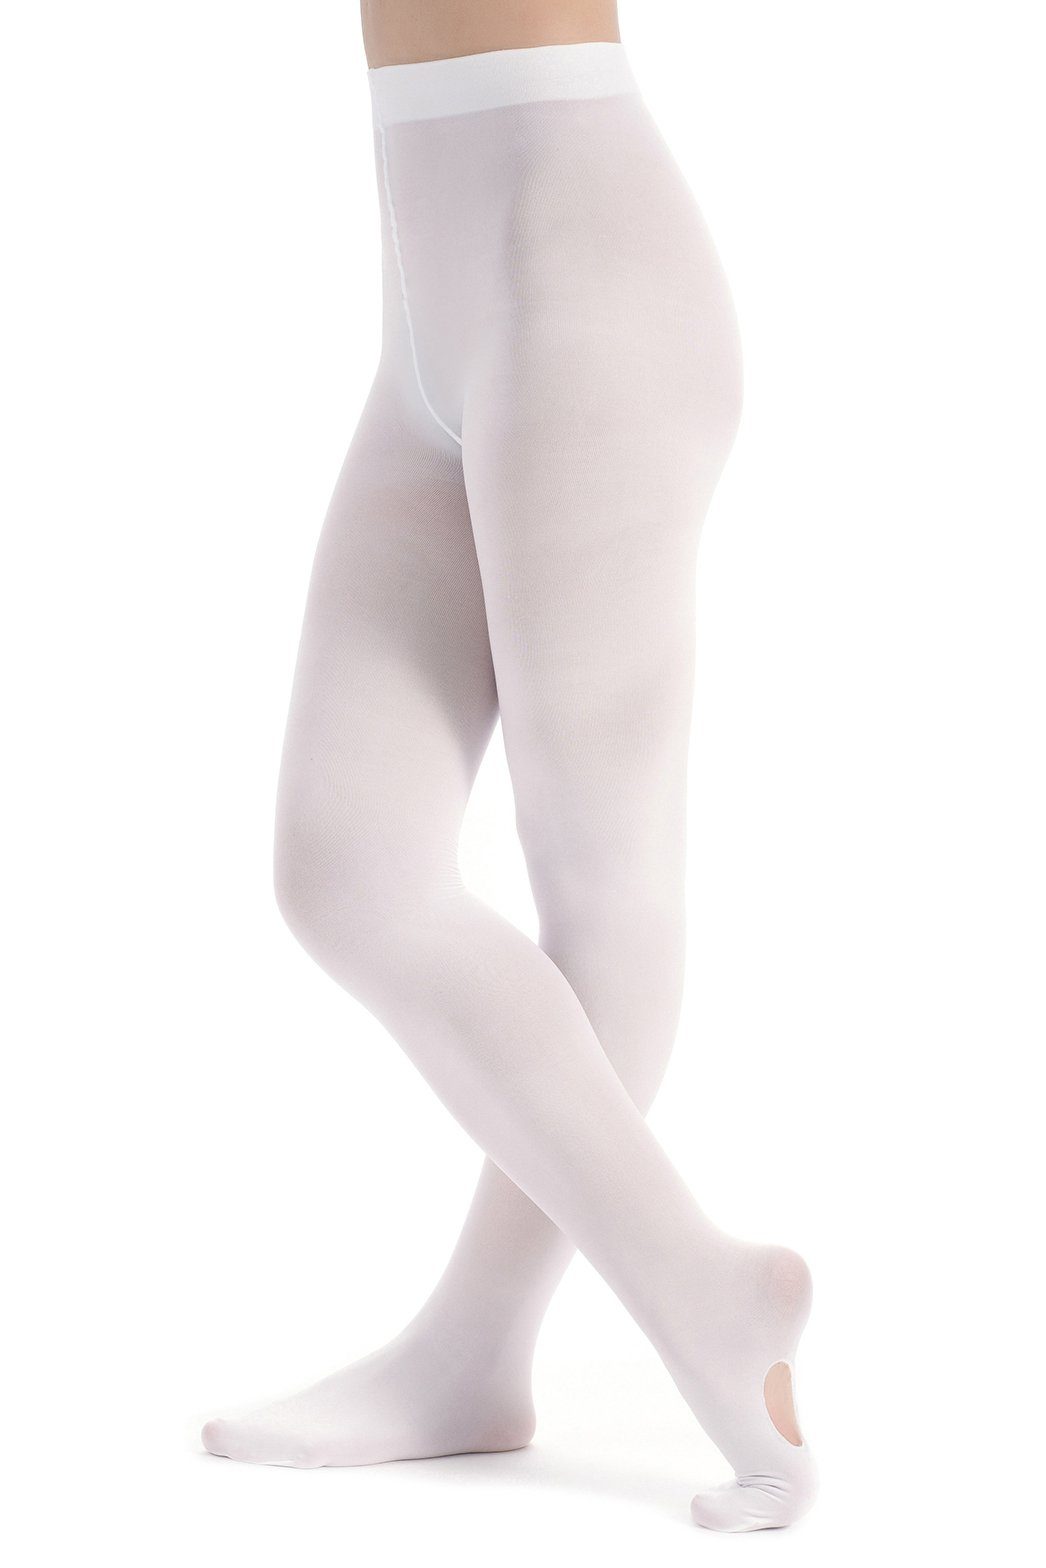 Ballenloch Strumpfhose mit für kein tanzmuster Mädchen Dana Rutschen, Strumpfhose äußerst weiß und wunderbar Ballett weich, strapazierfähig Kratzen